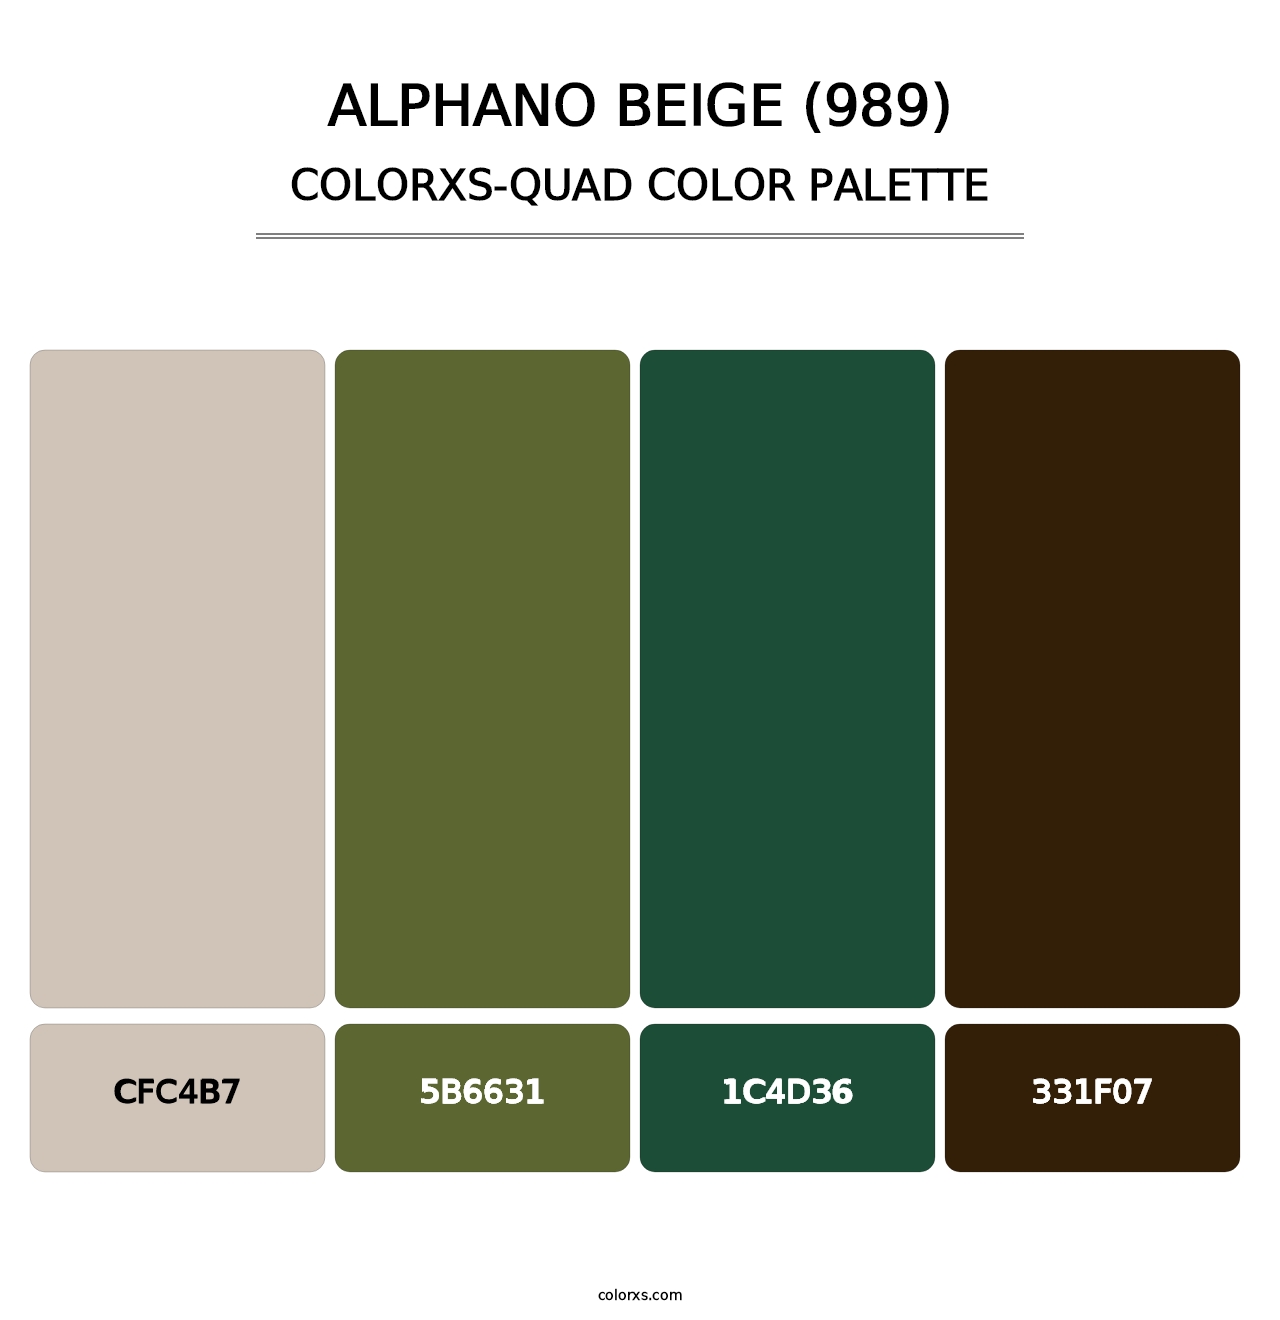 Alphano Beige (989) - Colorxs Quad Palette